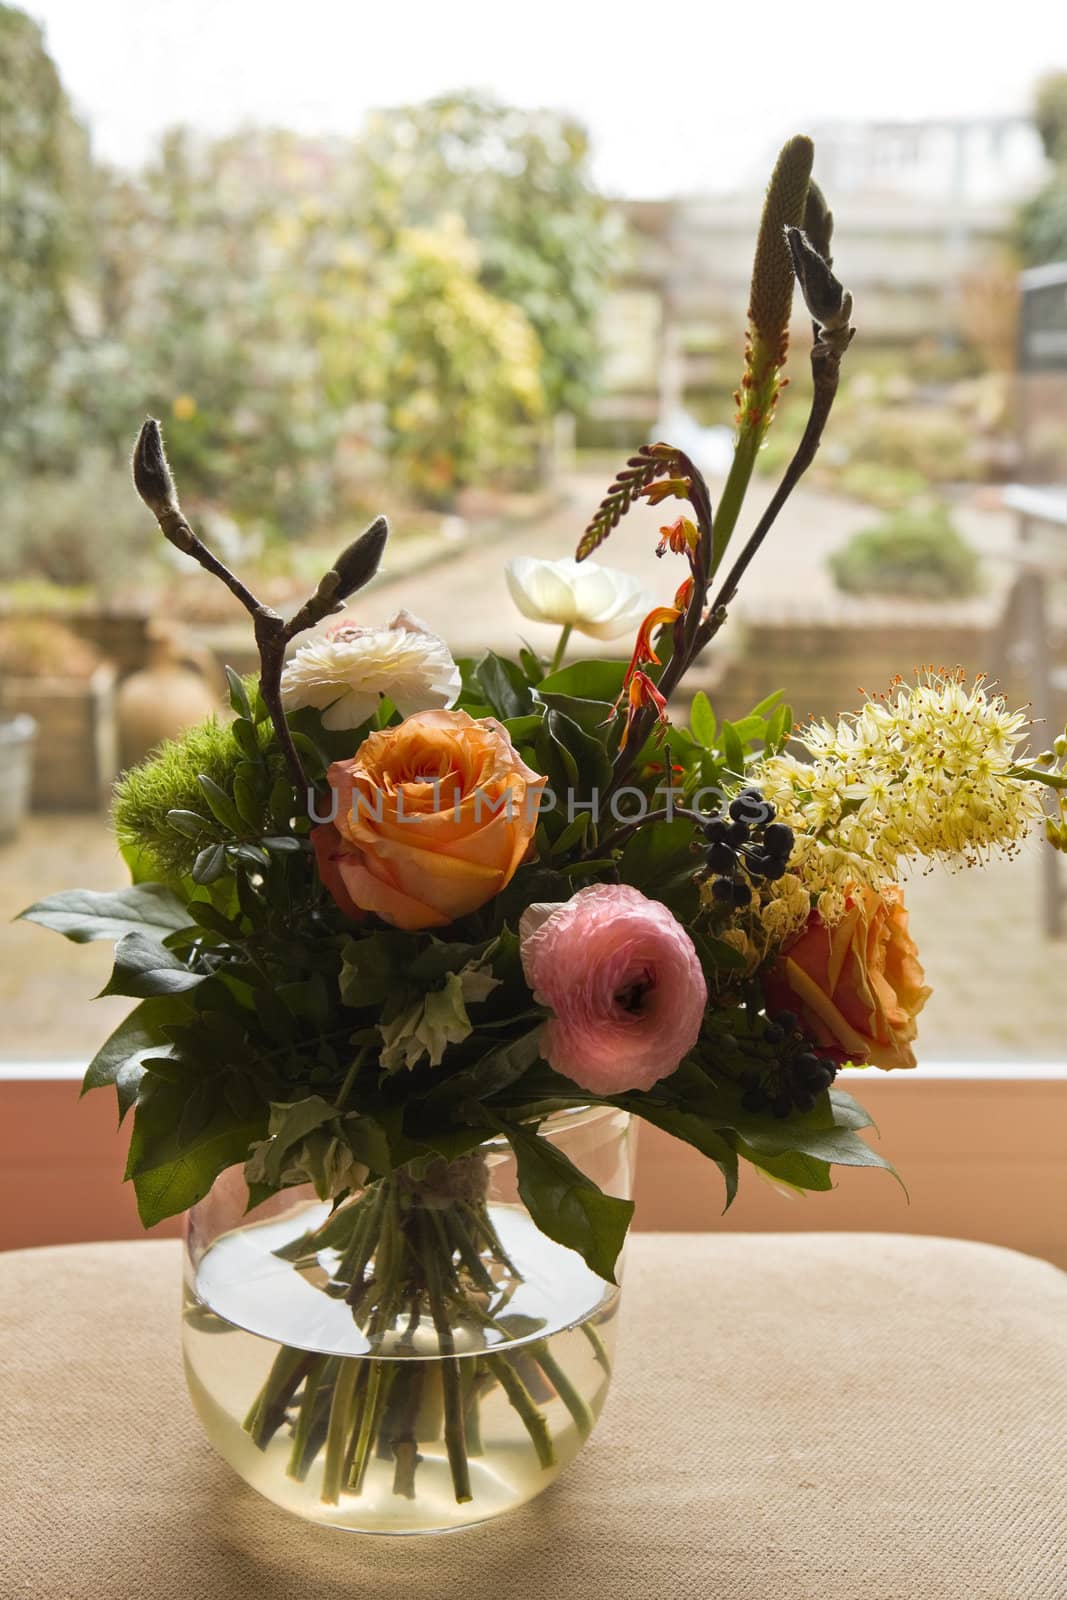 Bouquet of flowers in window by Colette